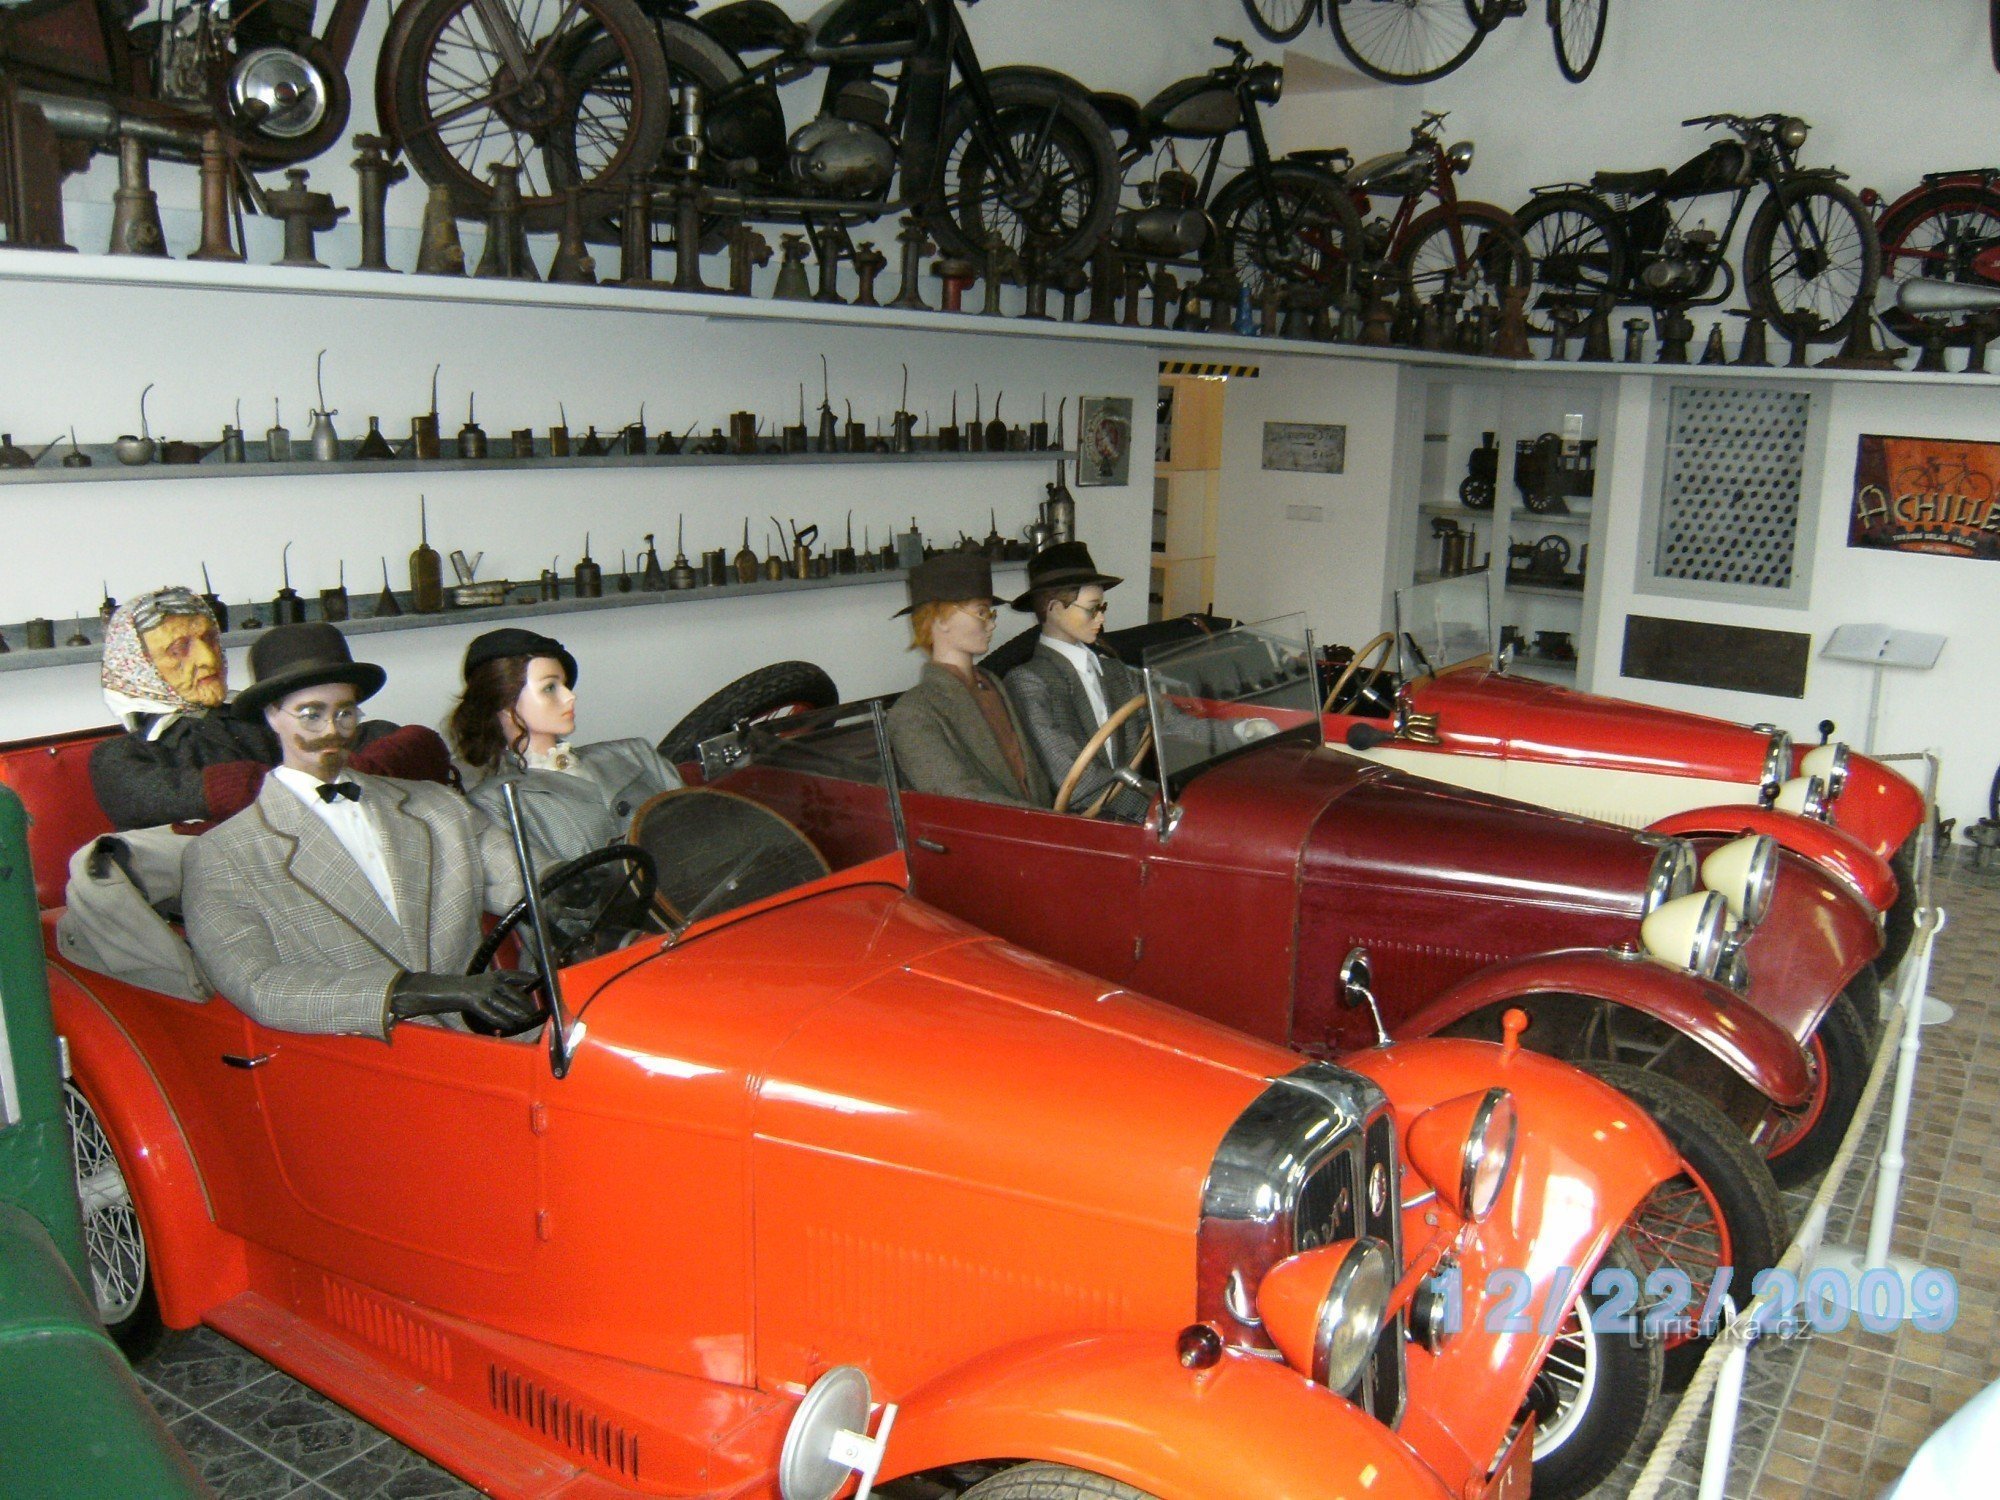 Znojmo - Μουσείο Αυτοκινήτου